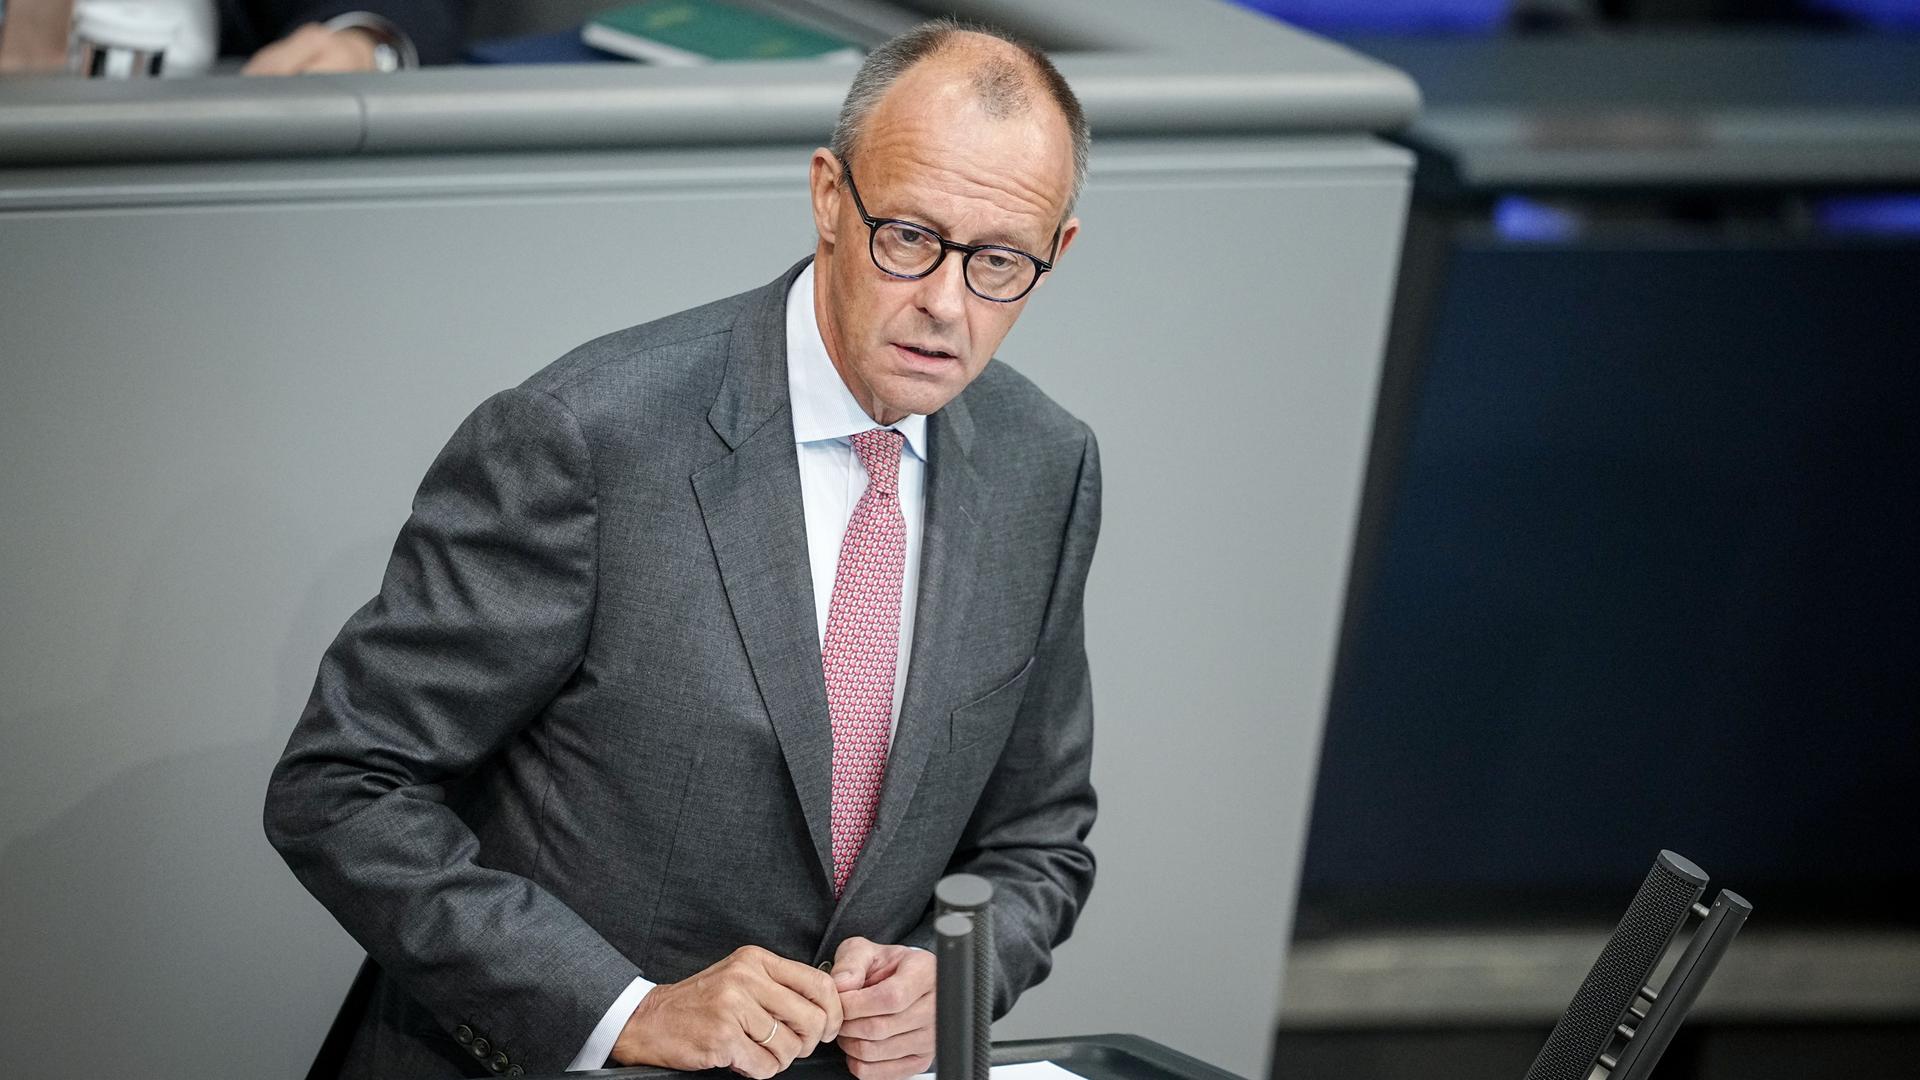 Friedrich Merz steht am Redepult des Bundestags und spricht mit ernster Mine zu den Abgeordneten.